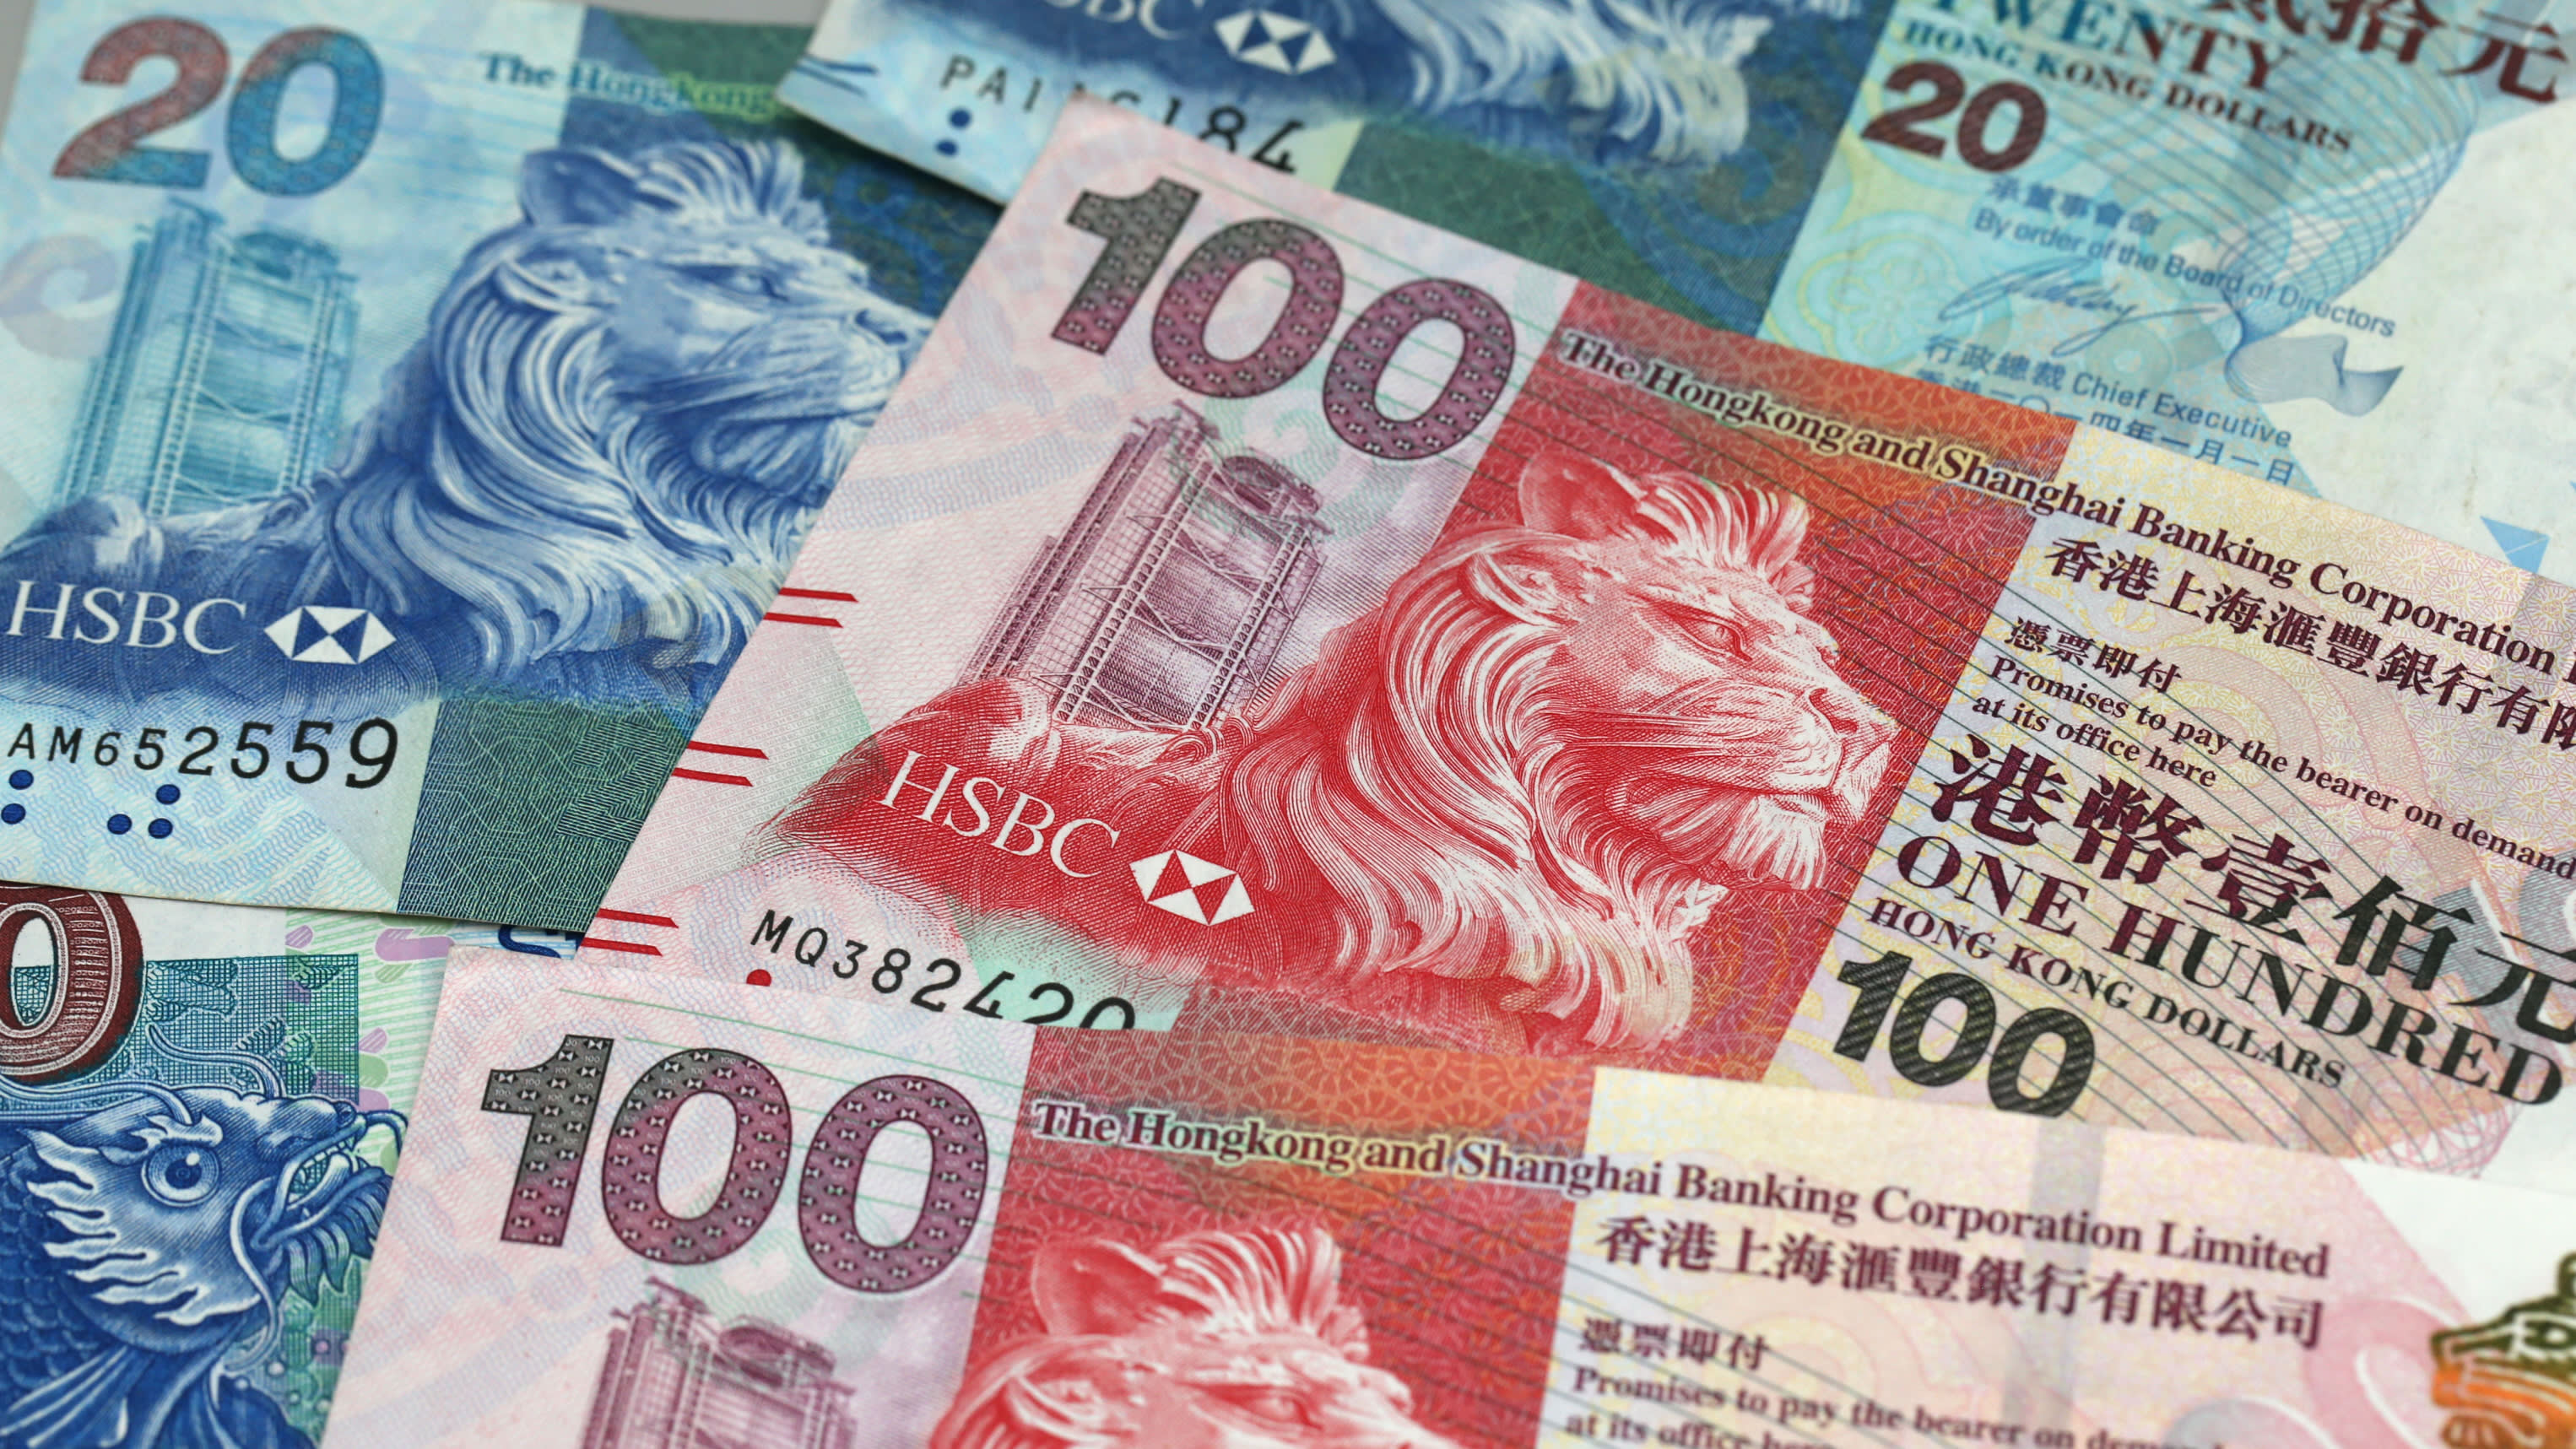 Hk в рублях. Деньги Гонконга. Гонконг денежные купюры. Гонконгский доллар. Гонконгский доллар, валюта Гонконга..